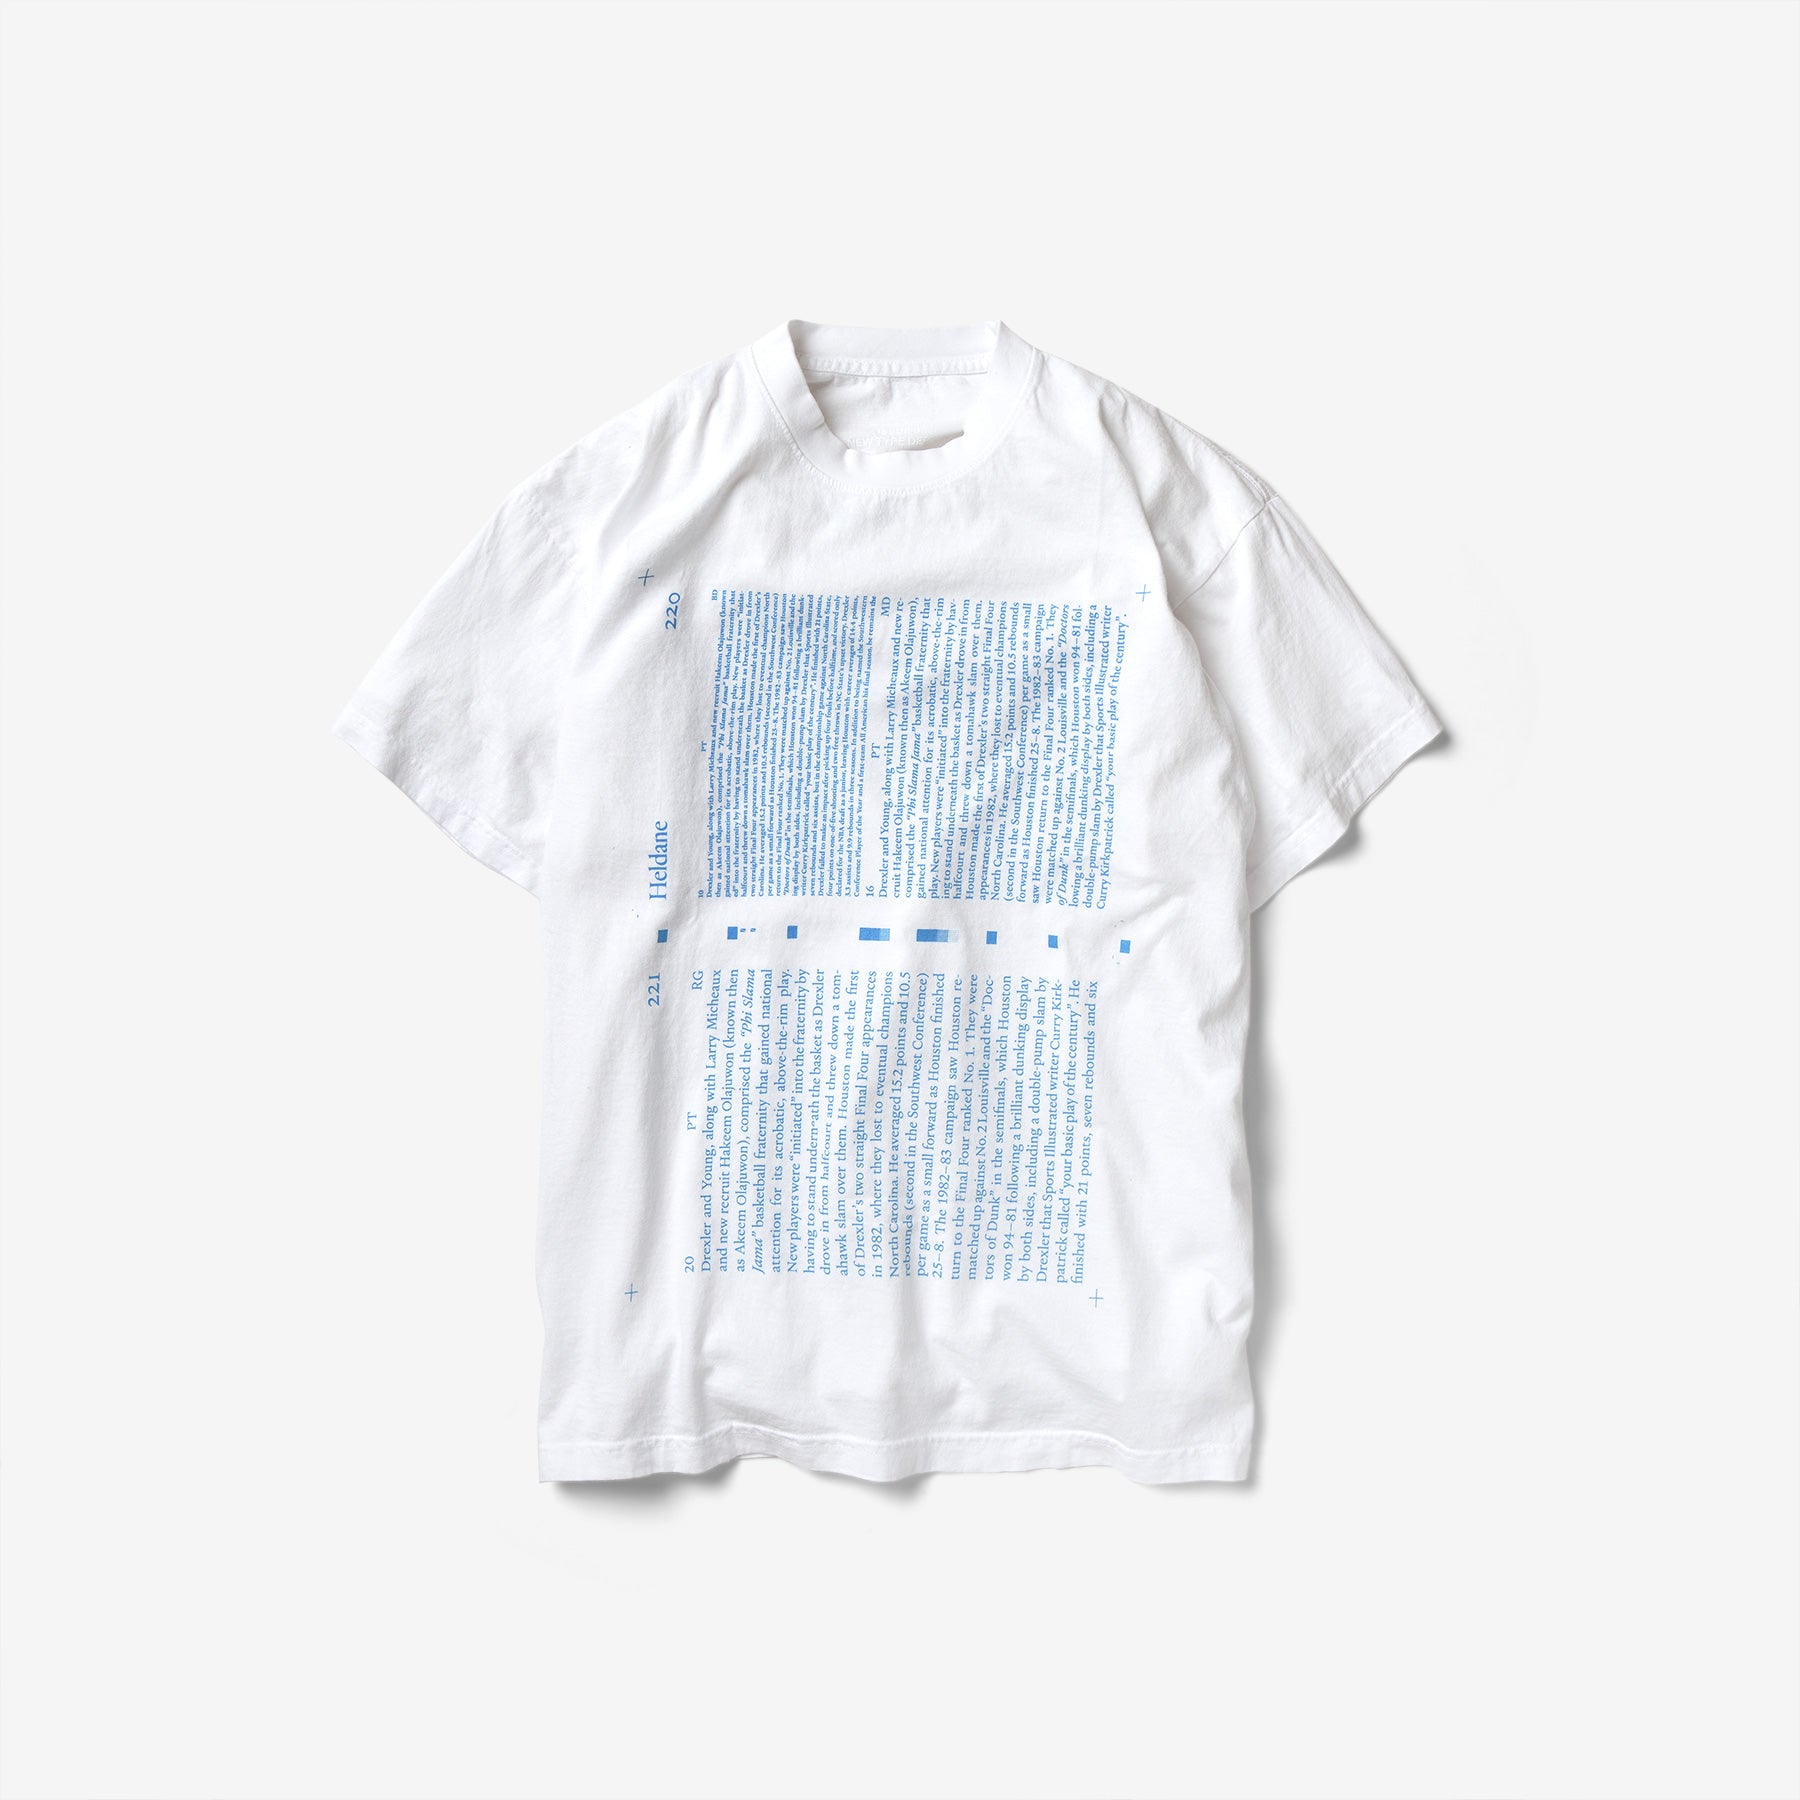 Shoplifters 8: New Shirt Design